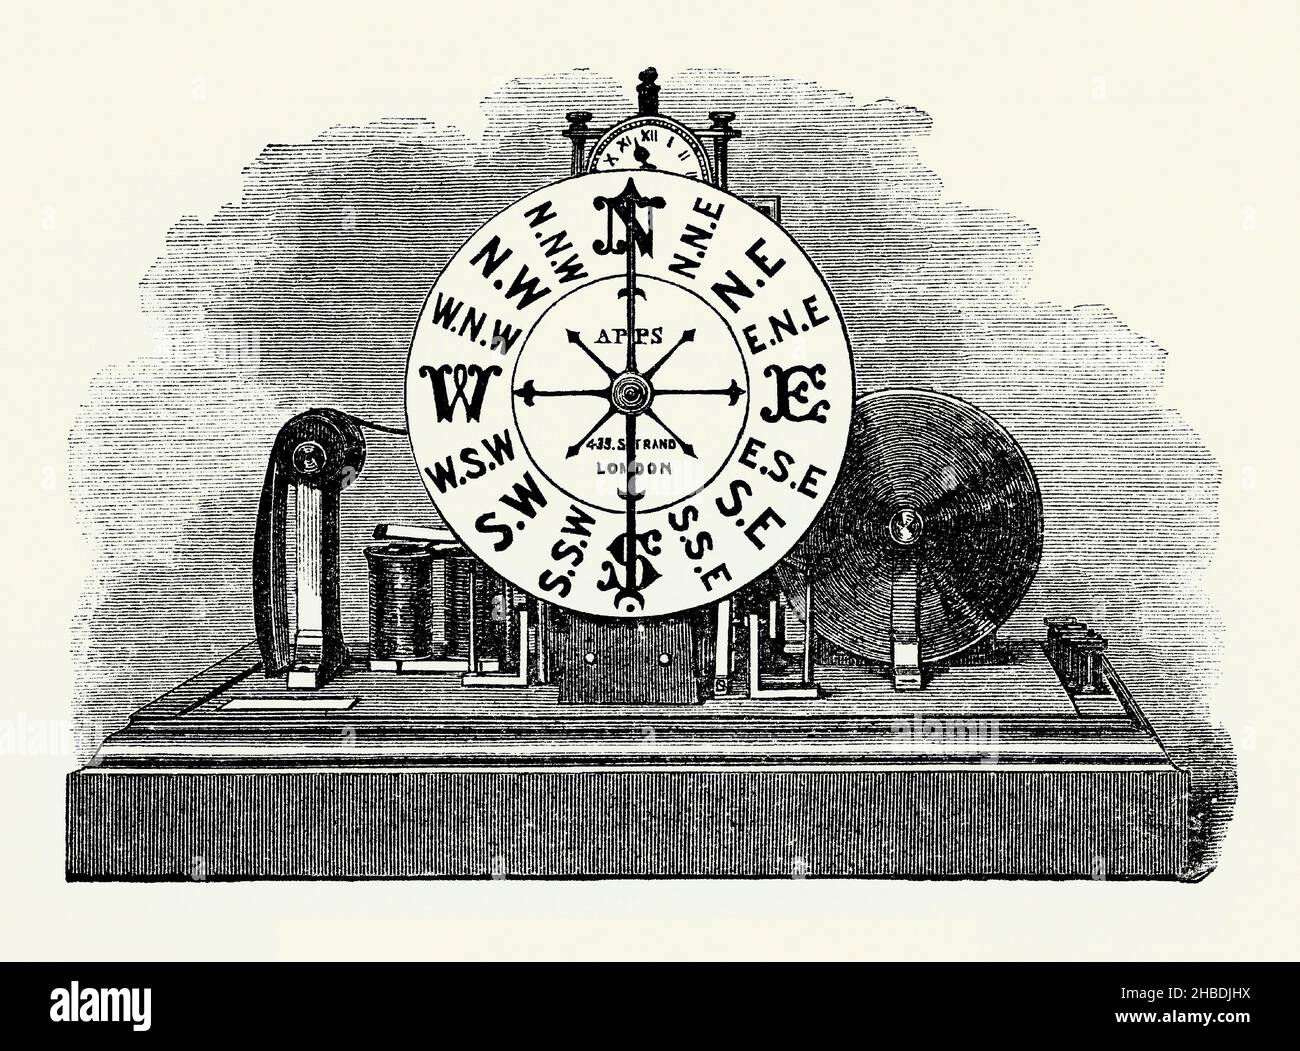 Ein alter Stich eines viktorianischen Anemometers. Es stammt aus einem Buch der 1890s über Entdeckungen und Erfindungen während der 1800s. Ein Anemometer ist ein Gerät zur Messung der windgeschwindigkeit und -Richtung. Es ist ein gängiges Wetterstationen-Instrument. Die erste bekannte Beschreibung eines Anemometers wurde 1450 von Leon Battista Alberti gegeben. Zuvor mussten alle Messungen manuell durchgeführt werden, aber mit dem Aufkommen batteriebetriebener Geräte konnte eine kontinuierliche Aufzeichnung der windgeschwindigkeit und -Richtung aufgezeichnet werden. Stockfoto